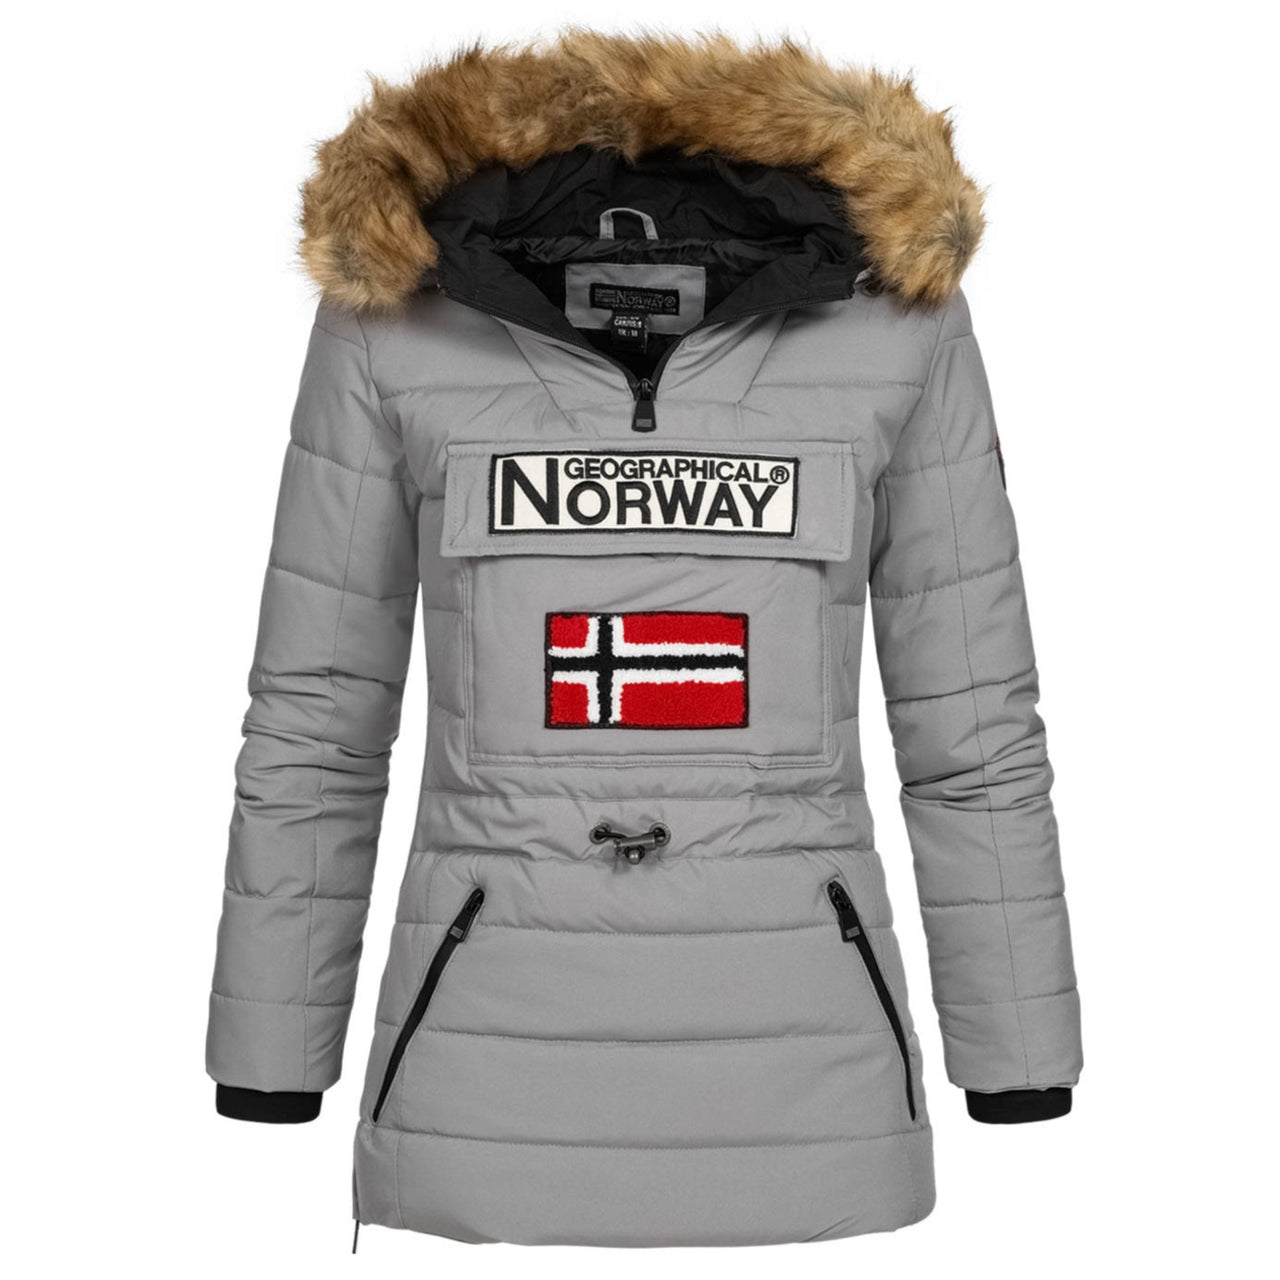 Jacken zum – Norway Geographical Überziehen